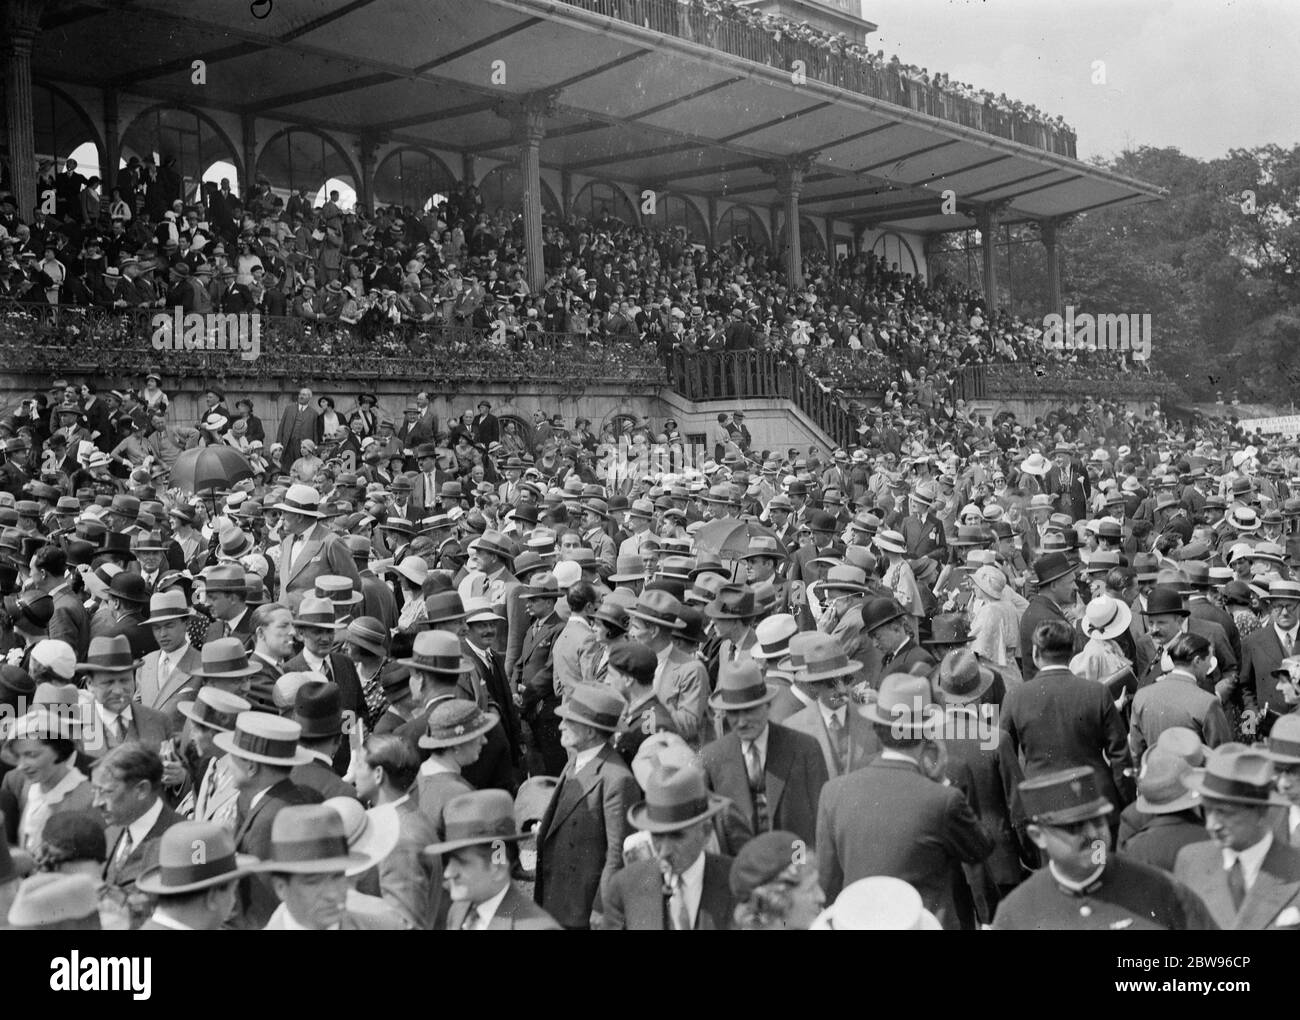 Riesige Menschenmengen sehen den Grand Prix von Frankreich in Longchamps. Eine enorme Menge beobachtete die Französisch Grand Prix Rennen in Longchamps, gewann von Mr. A J Duggan 's Strip The Willow, mit Lord Derby 's Satrap zweite, und Fog Horn dritten. Die enorme Menge, die das Rennen beobachtet. 27 Juni 1932 Stockfoto